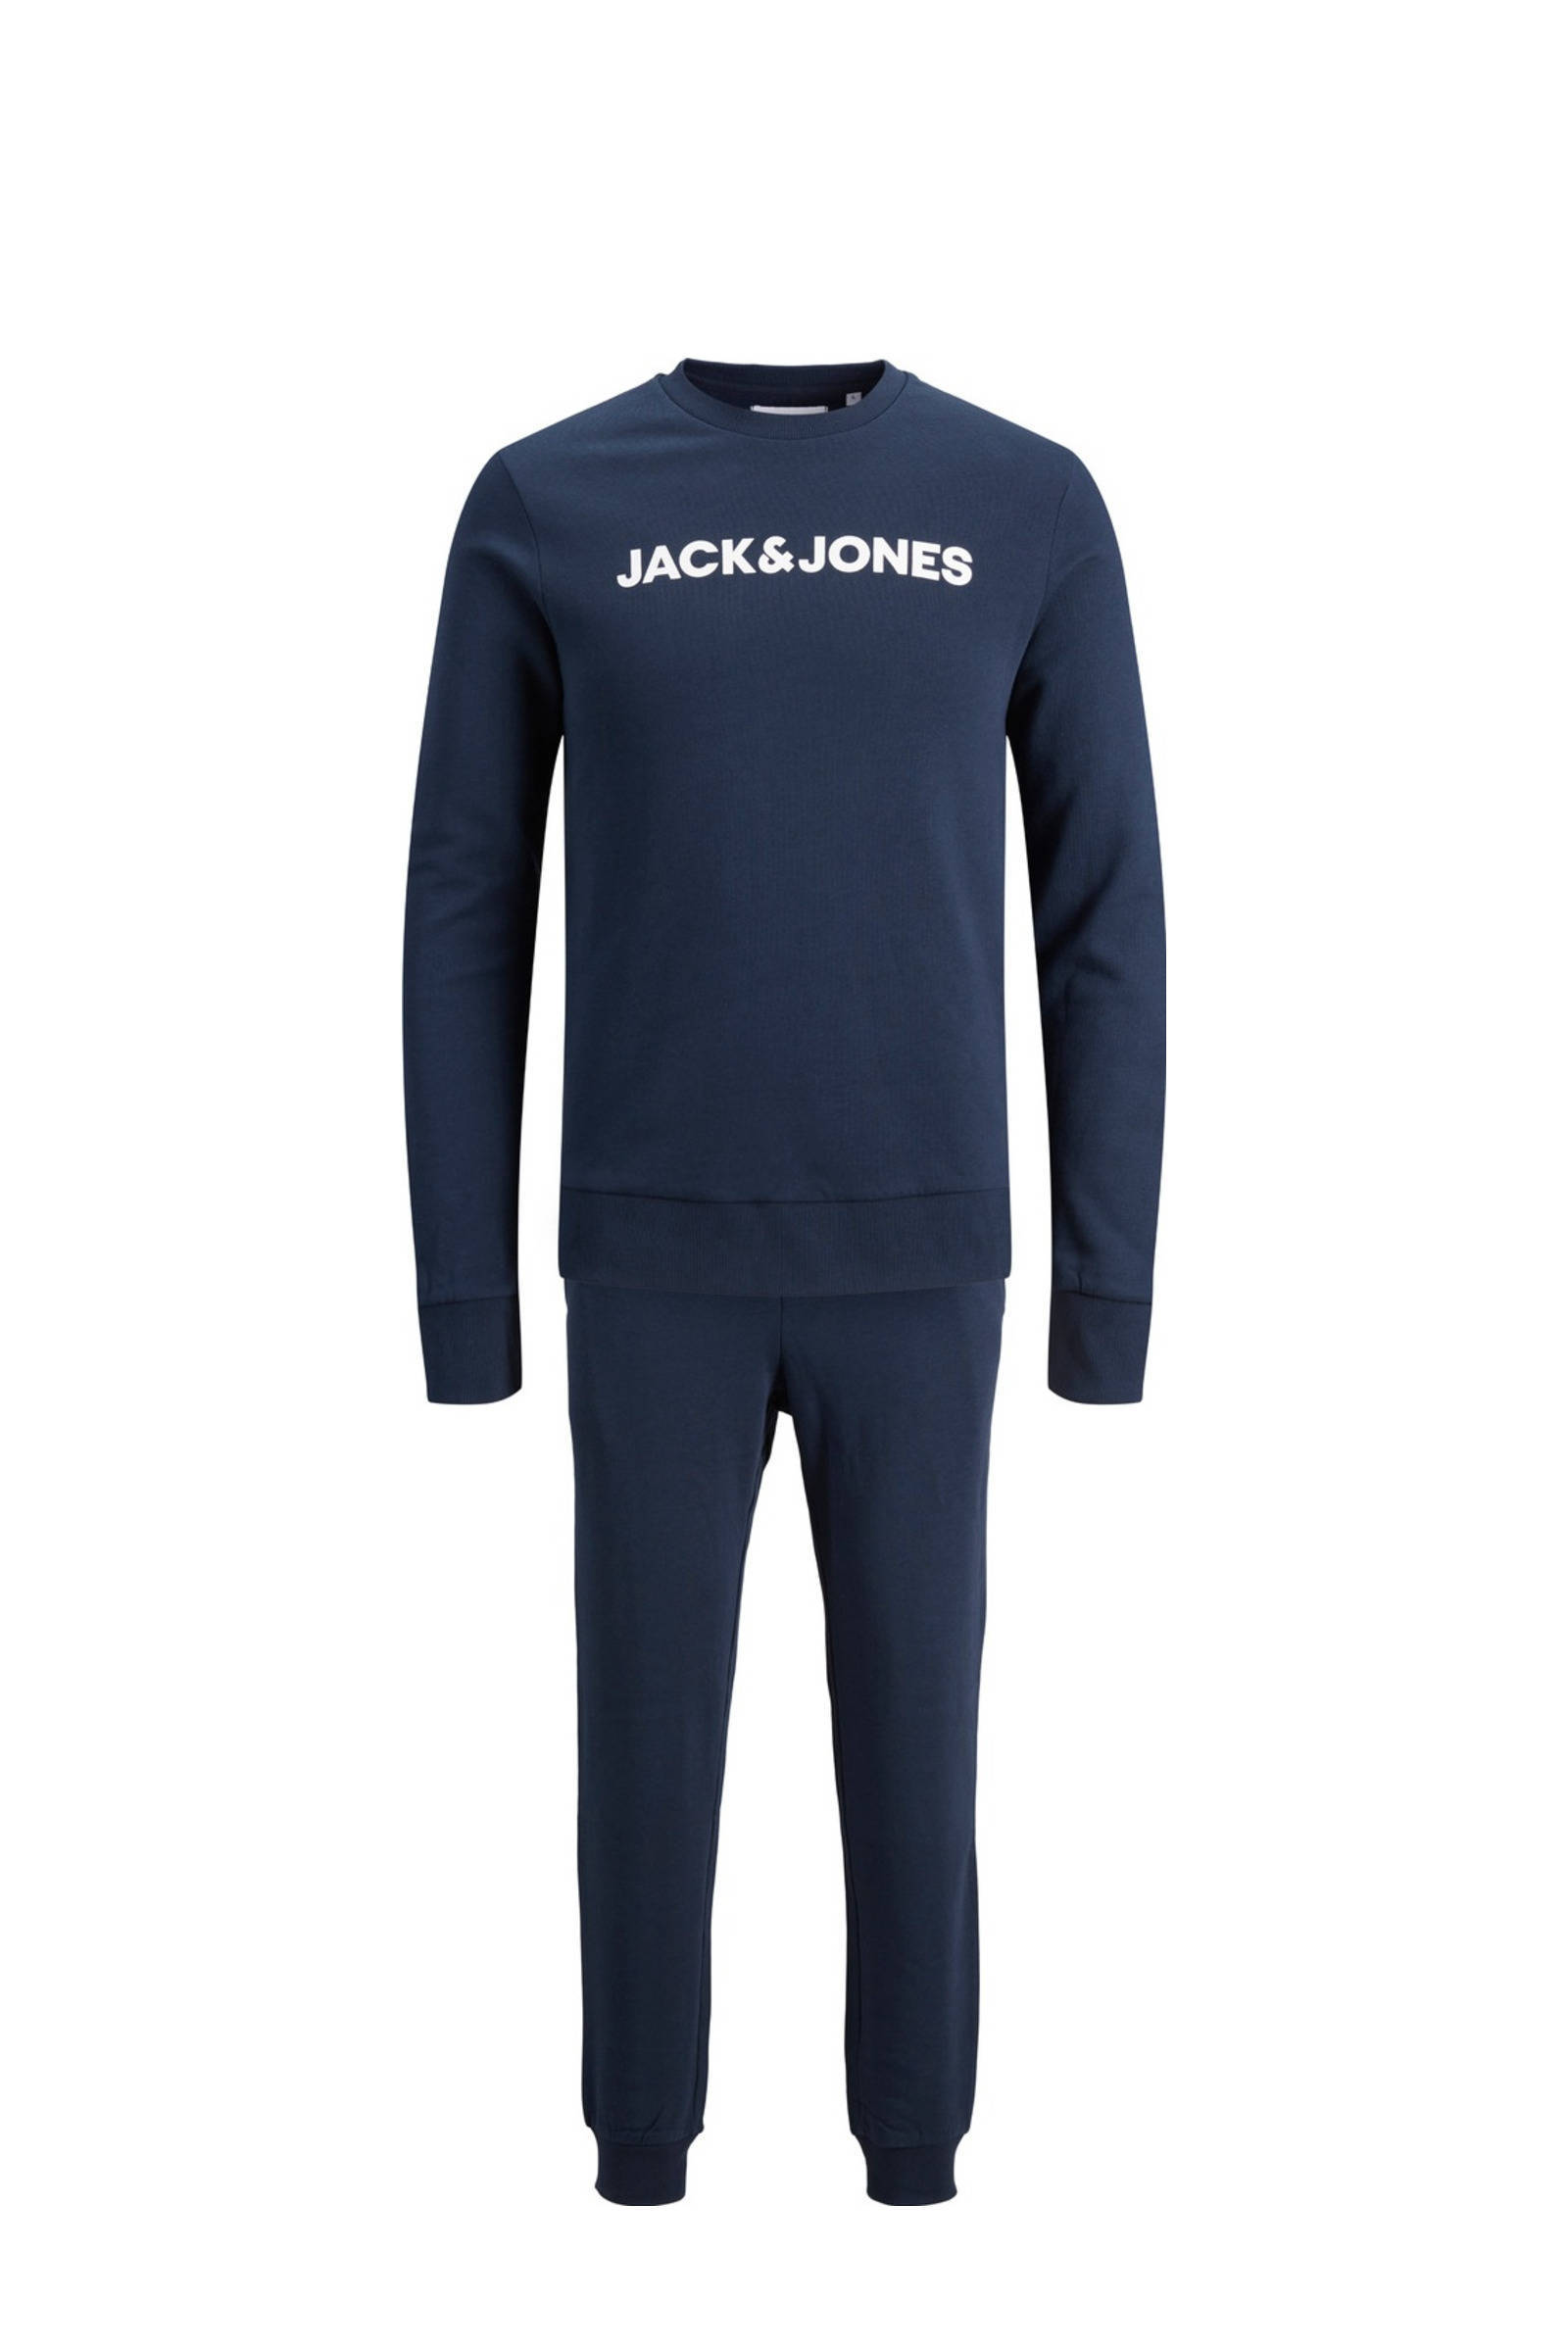 JACK & JONES sweater + joggingbroek JACLOUNGE navy blazer online kopen